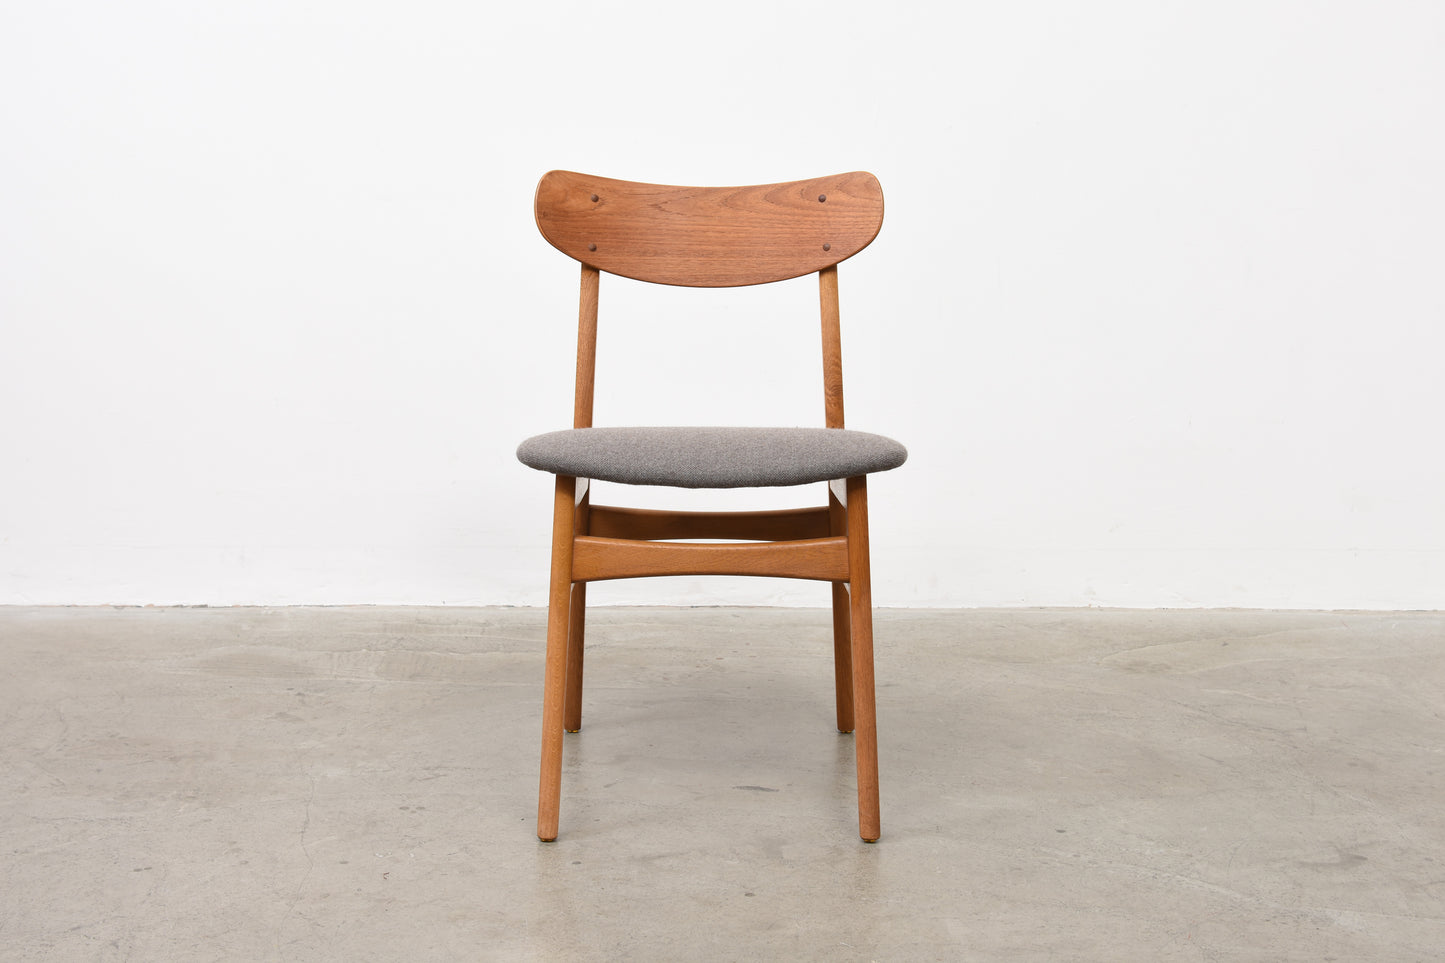 Set of teak + oak chairs by Farstrup